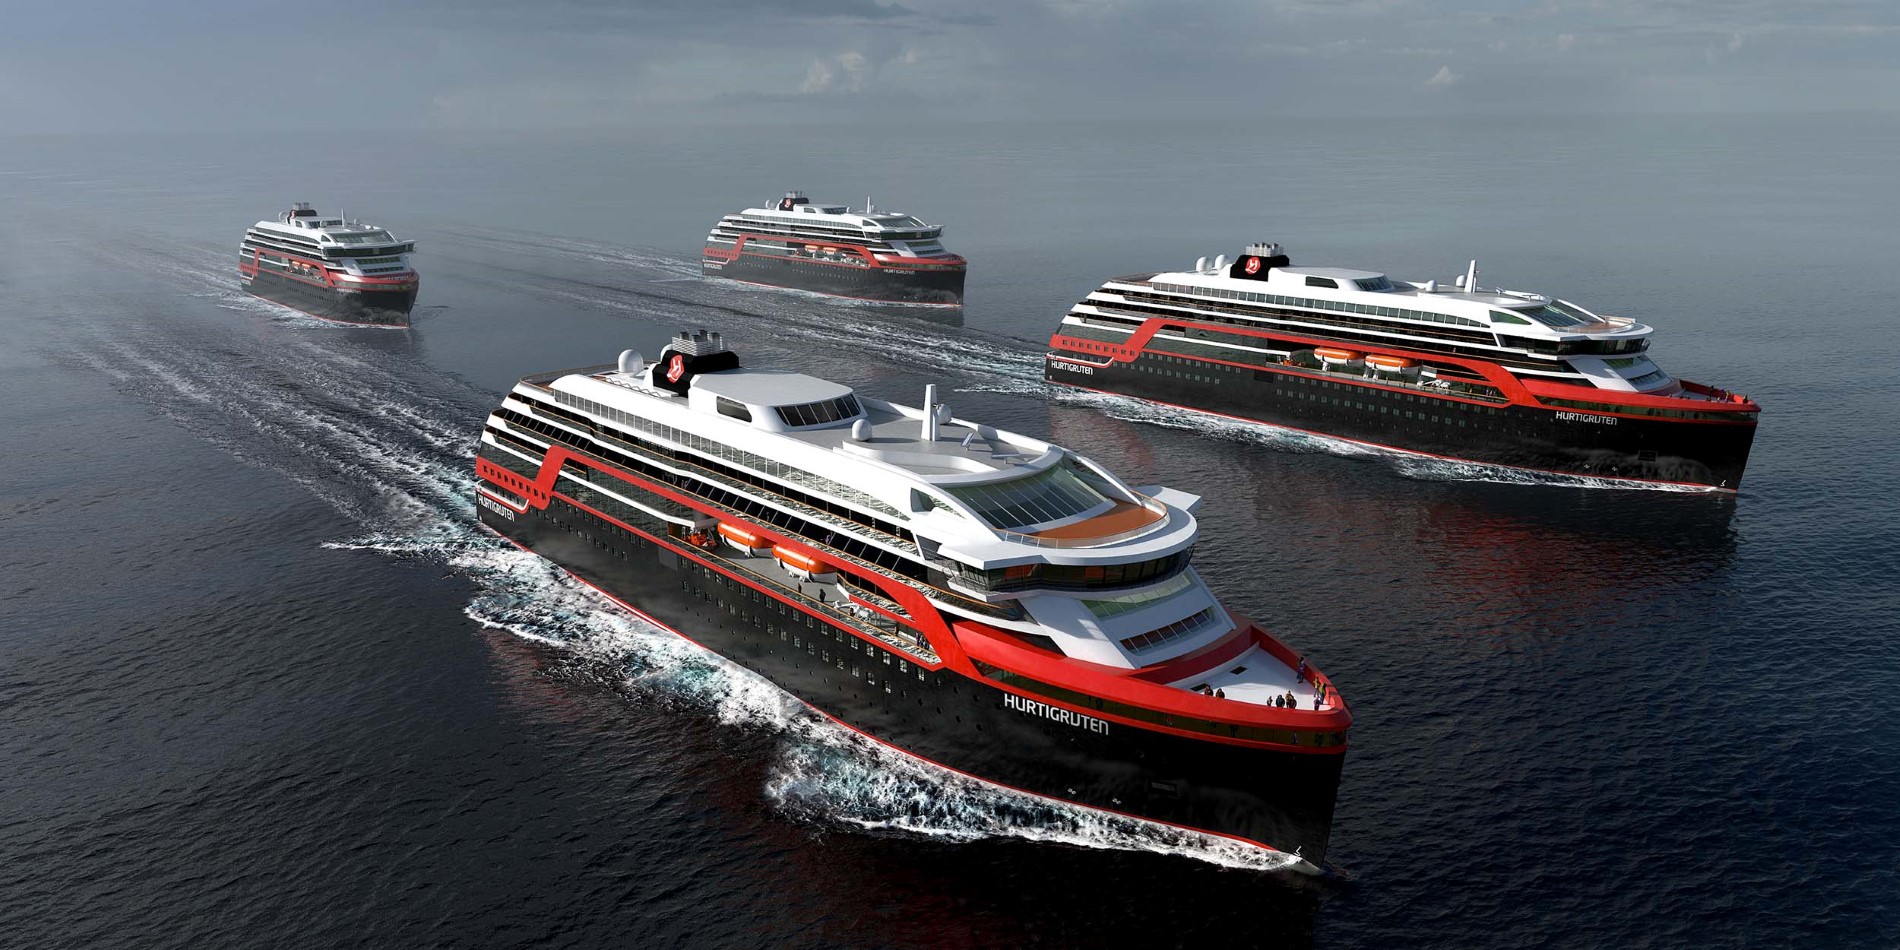 4 neue Entdeckerschiffe wurden von Hurtigruten angekündigt